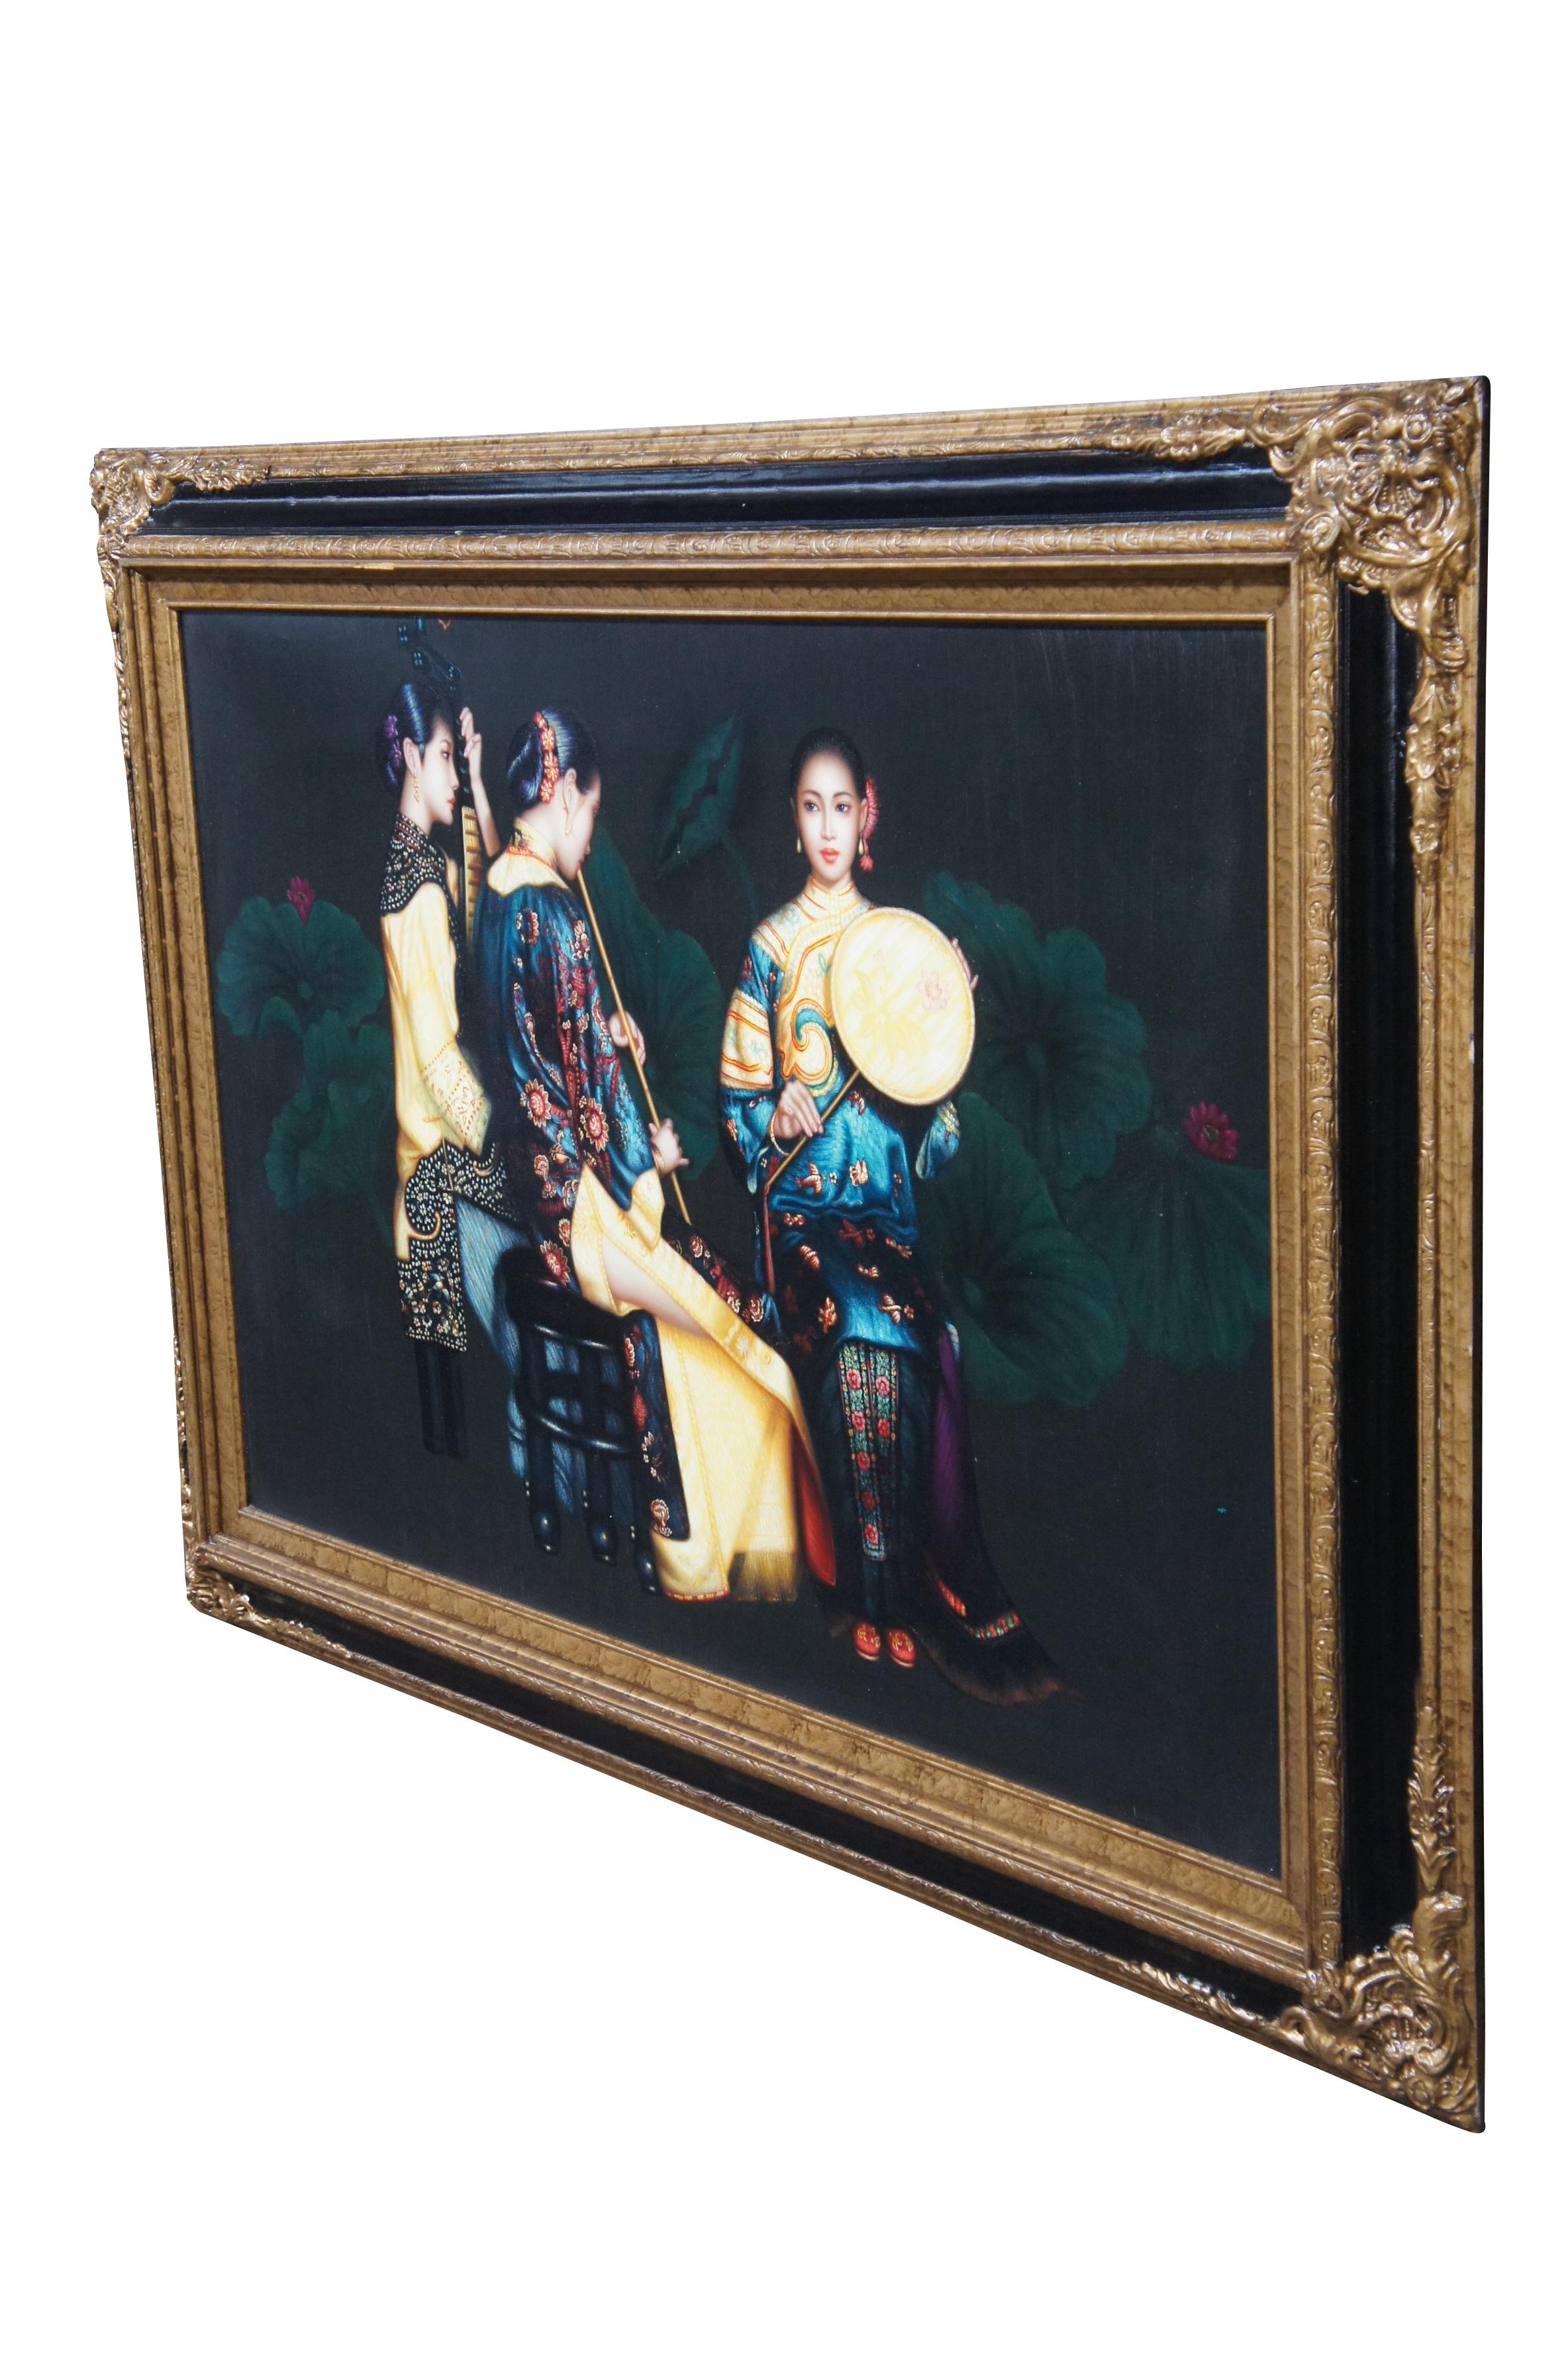 Vintage Trio de femmes chinoises jouant des instruments peinture à l'huile sur toile d'après Chen Yifei.  Variously trois jeunes musiciens en tenue de cour traditionnelle jouant de divers instruments.

Chen Yifei (chinois : 陈逸飞 ; 12 avril 1946 - 10